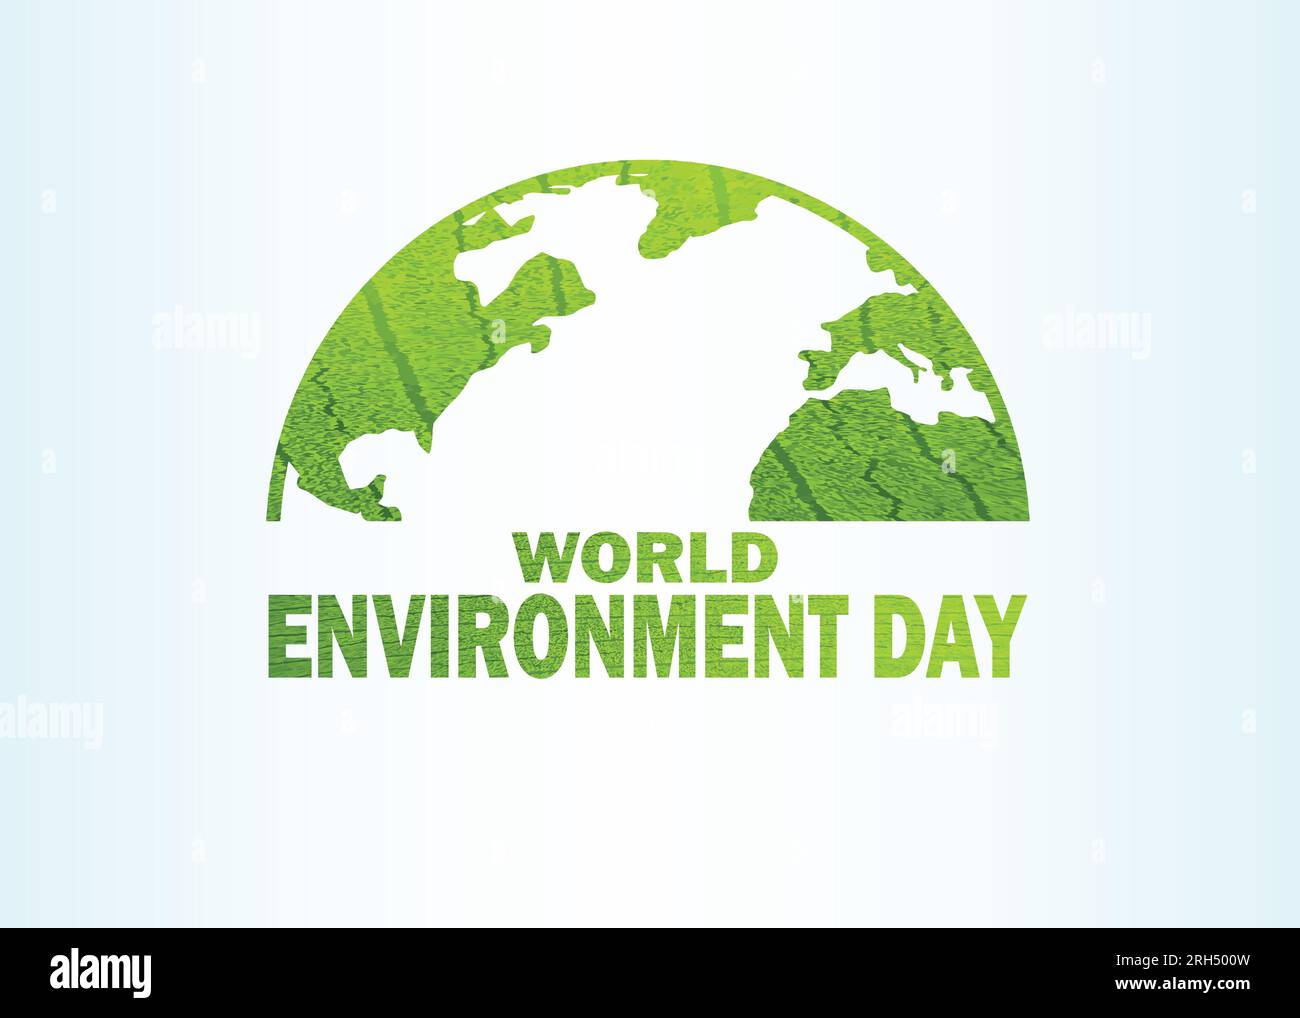 Illustration de conception de modèle vectoriel de la Journée mondiale de l'environnement. Bonne journée de l'environnement, 05 juin. Carte du monde avec texte de la Journée de l'environnement. Convient pour l'accueil Illustration de Vecteur